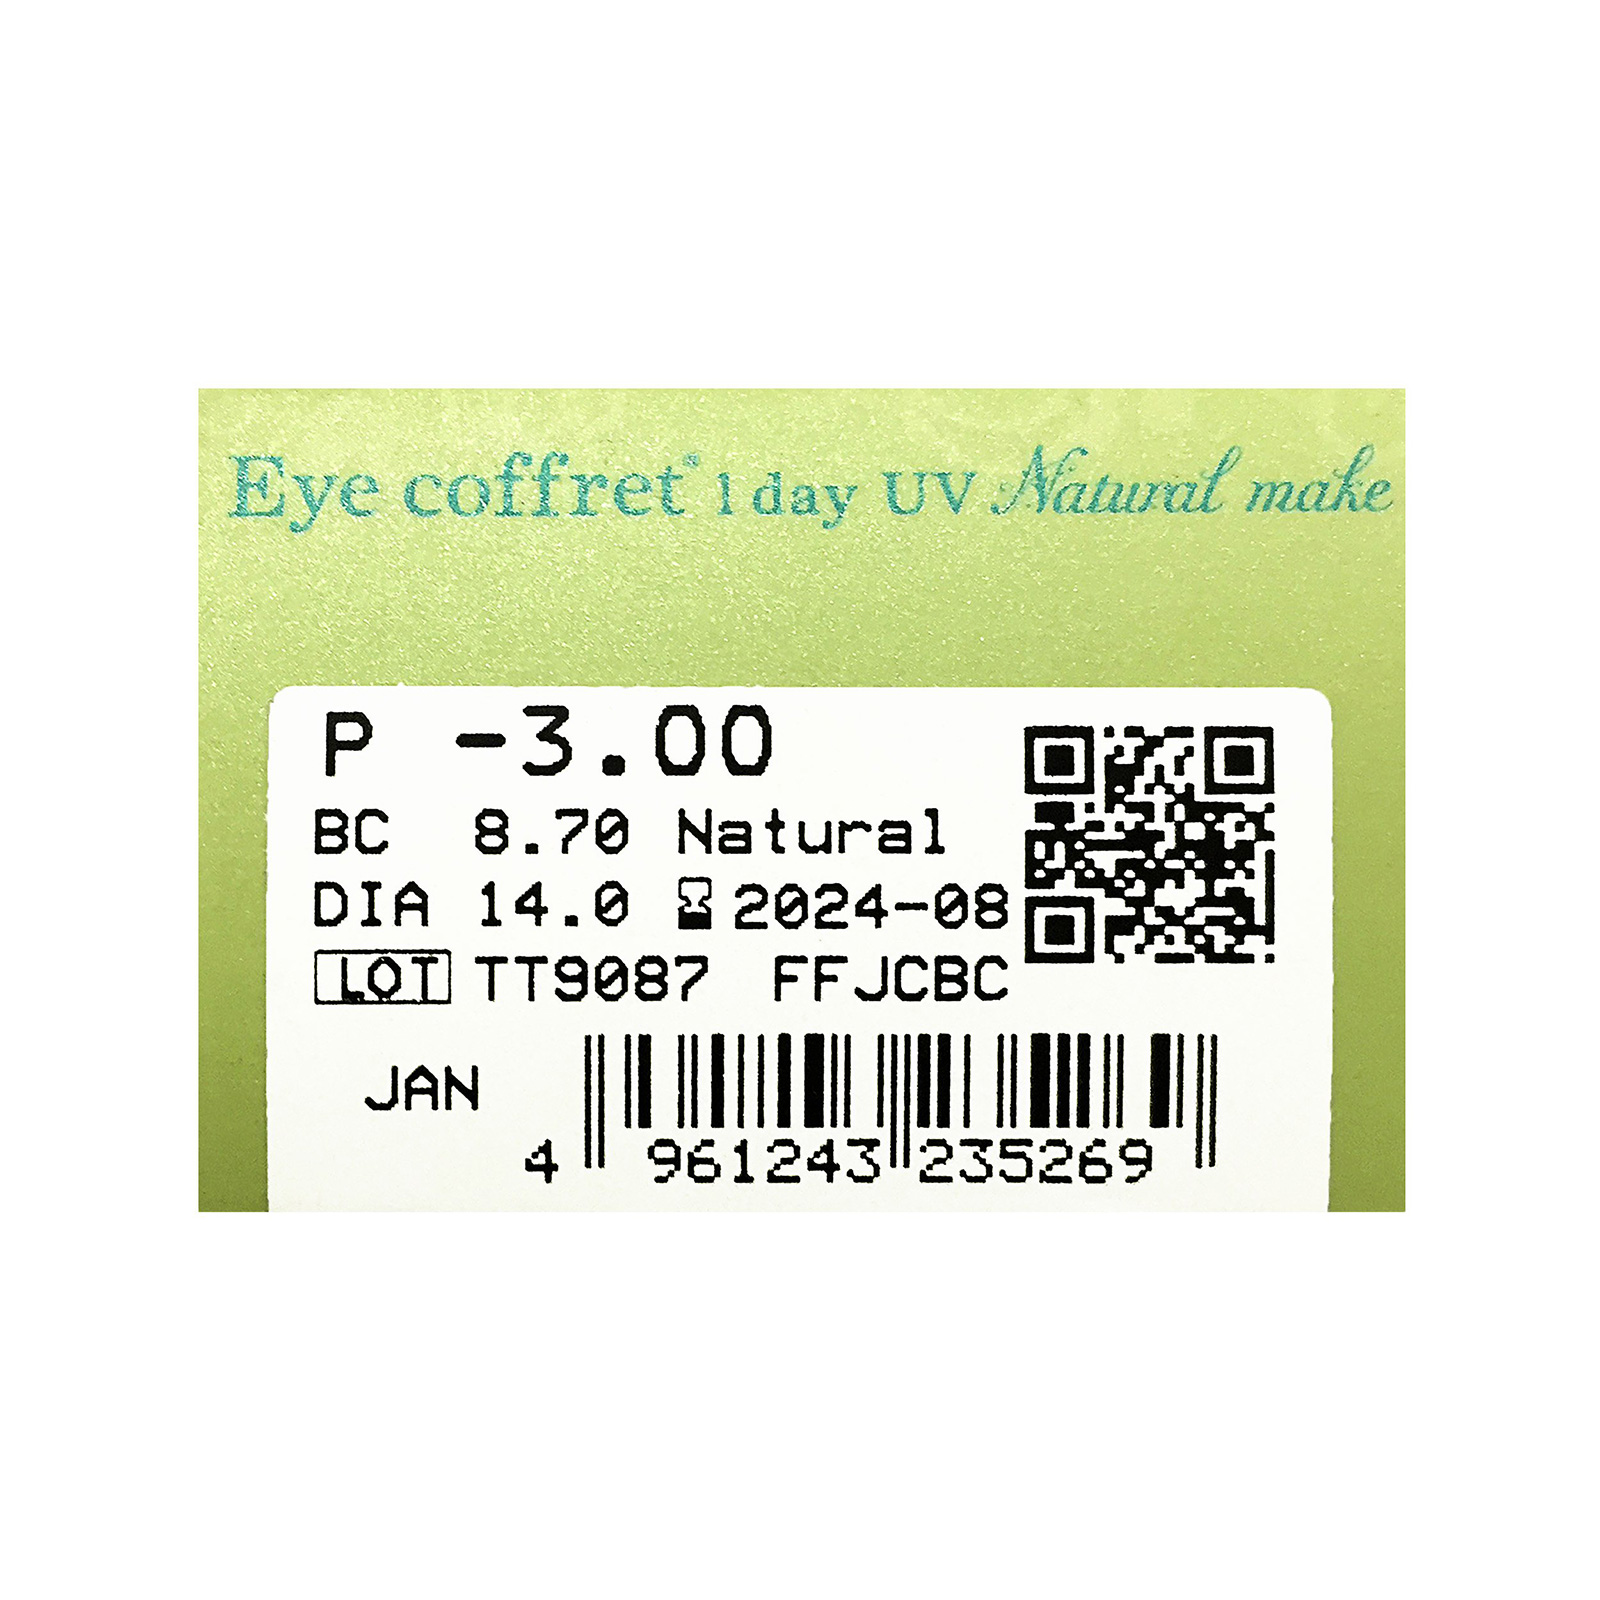 Eye coffret 1day UV (Natural make)